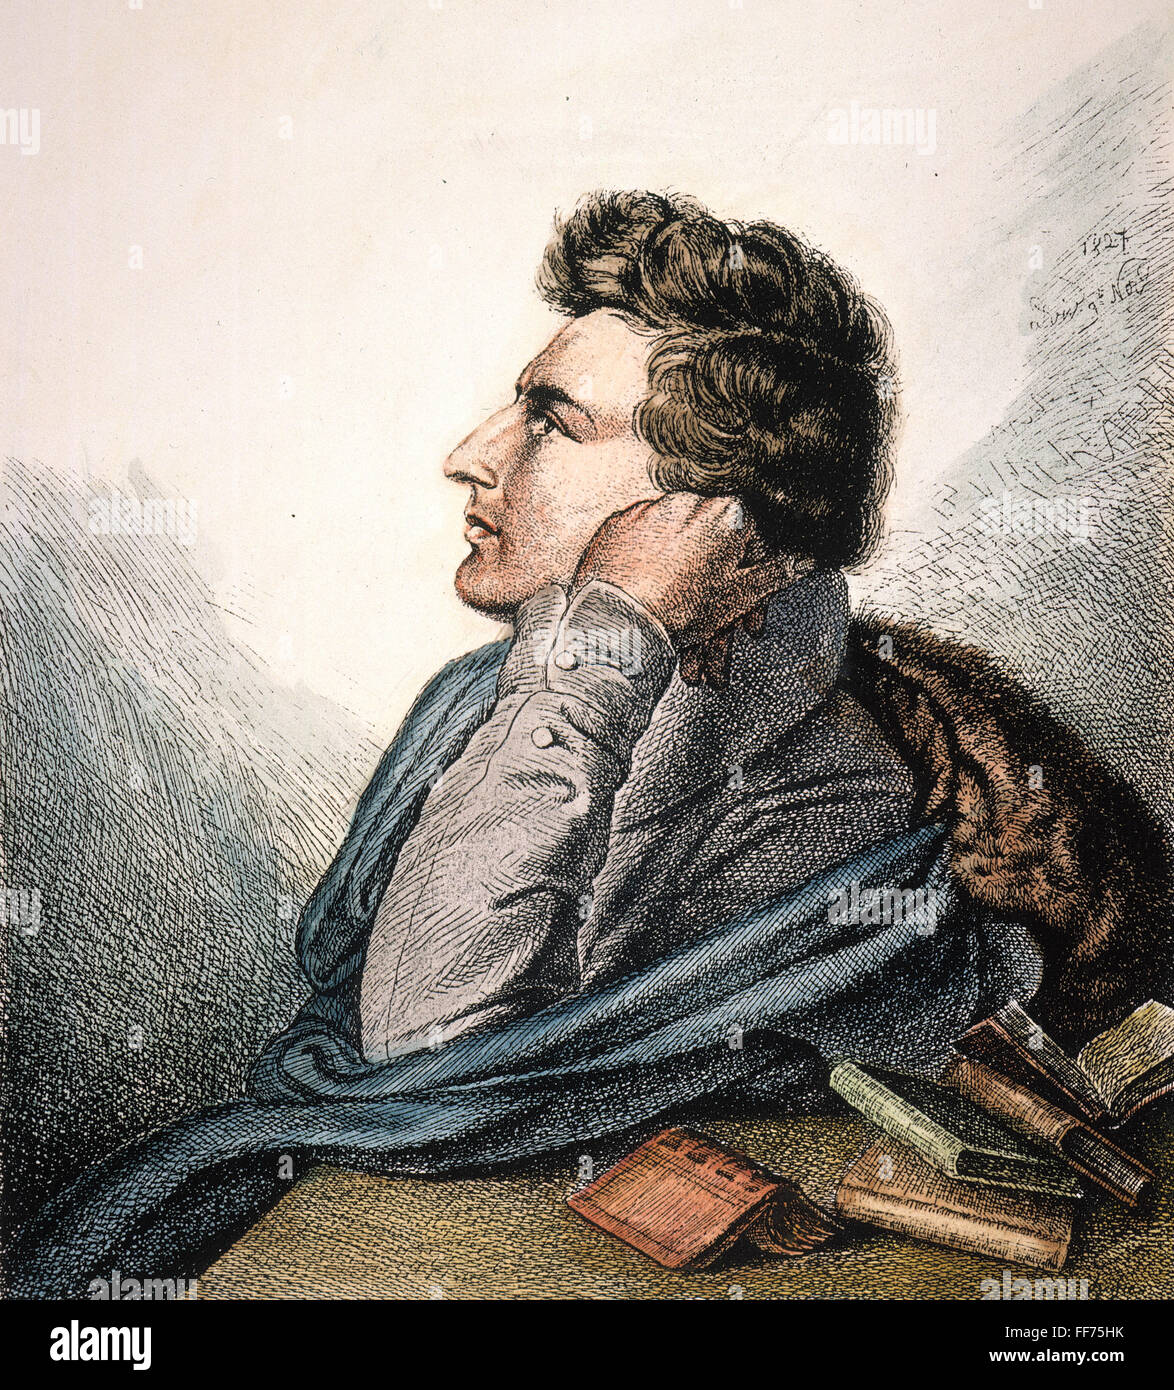 HEINRICH HEINE (1797-1856). /NGerman poète et critique. L'eau-forte, 1827, par Ludwig Emil Grimm (frère du folklore). Banque D'Images